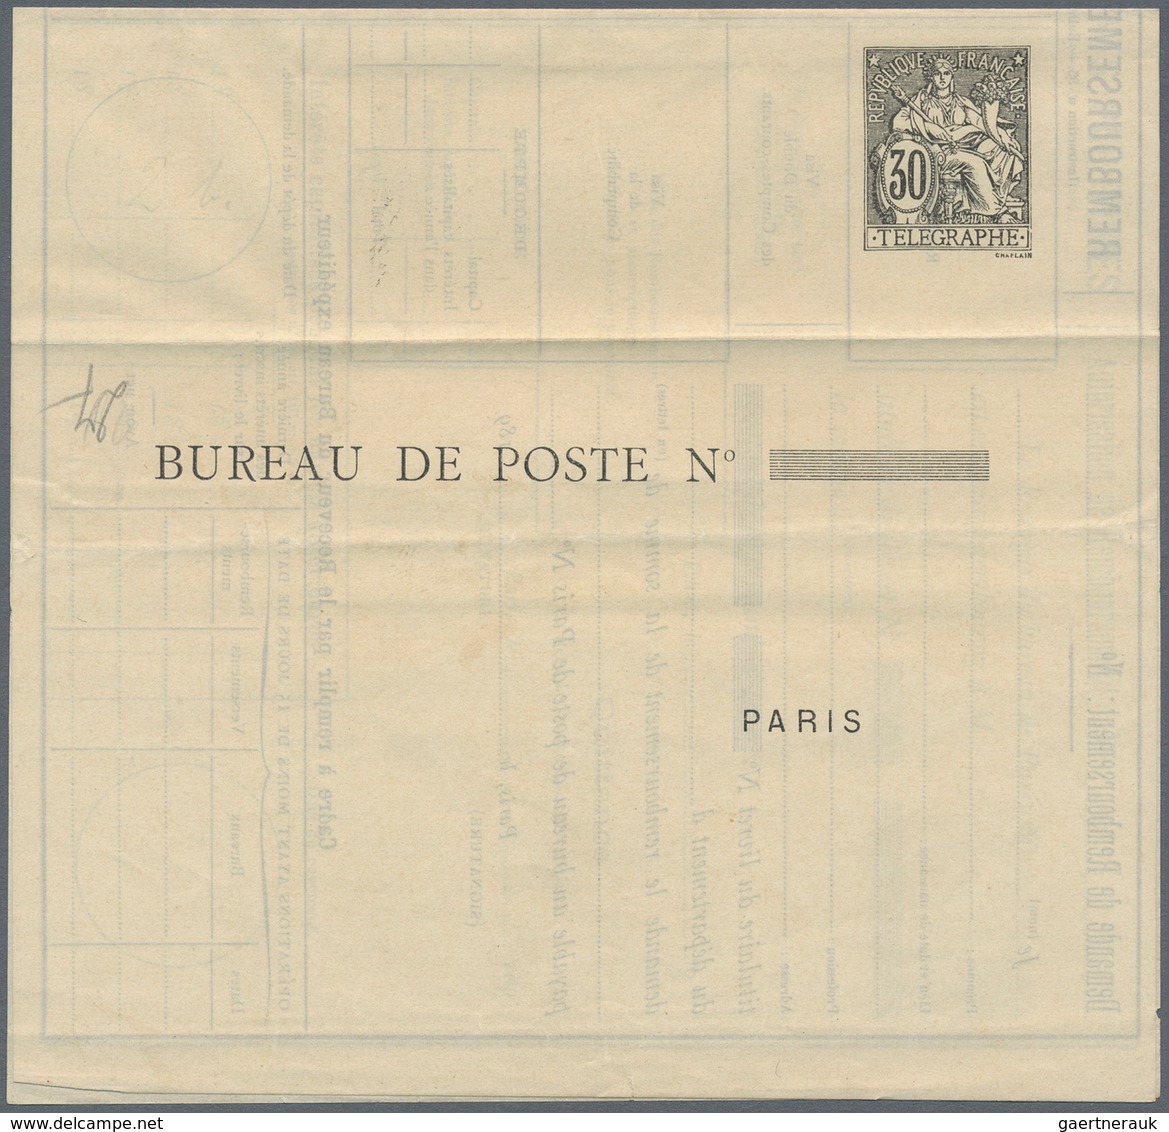 Frankreich - Ganzsachen: 1884/1899, 4 different postal stationery money orders 30 C black, unused, s